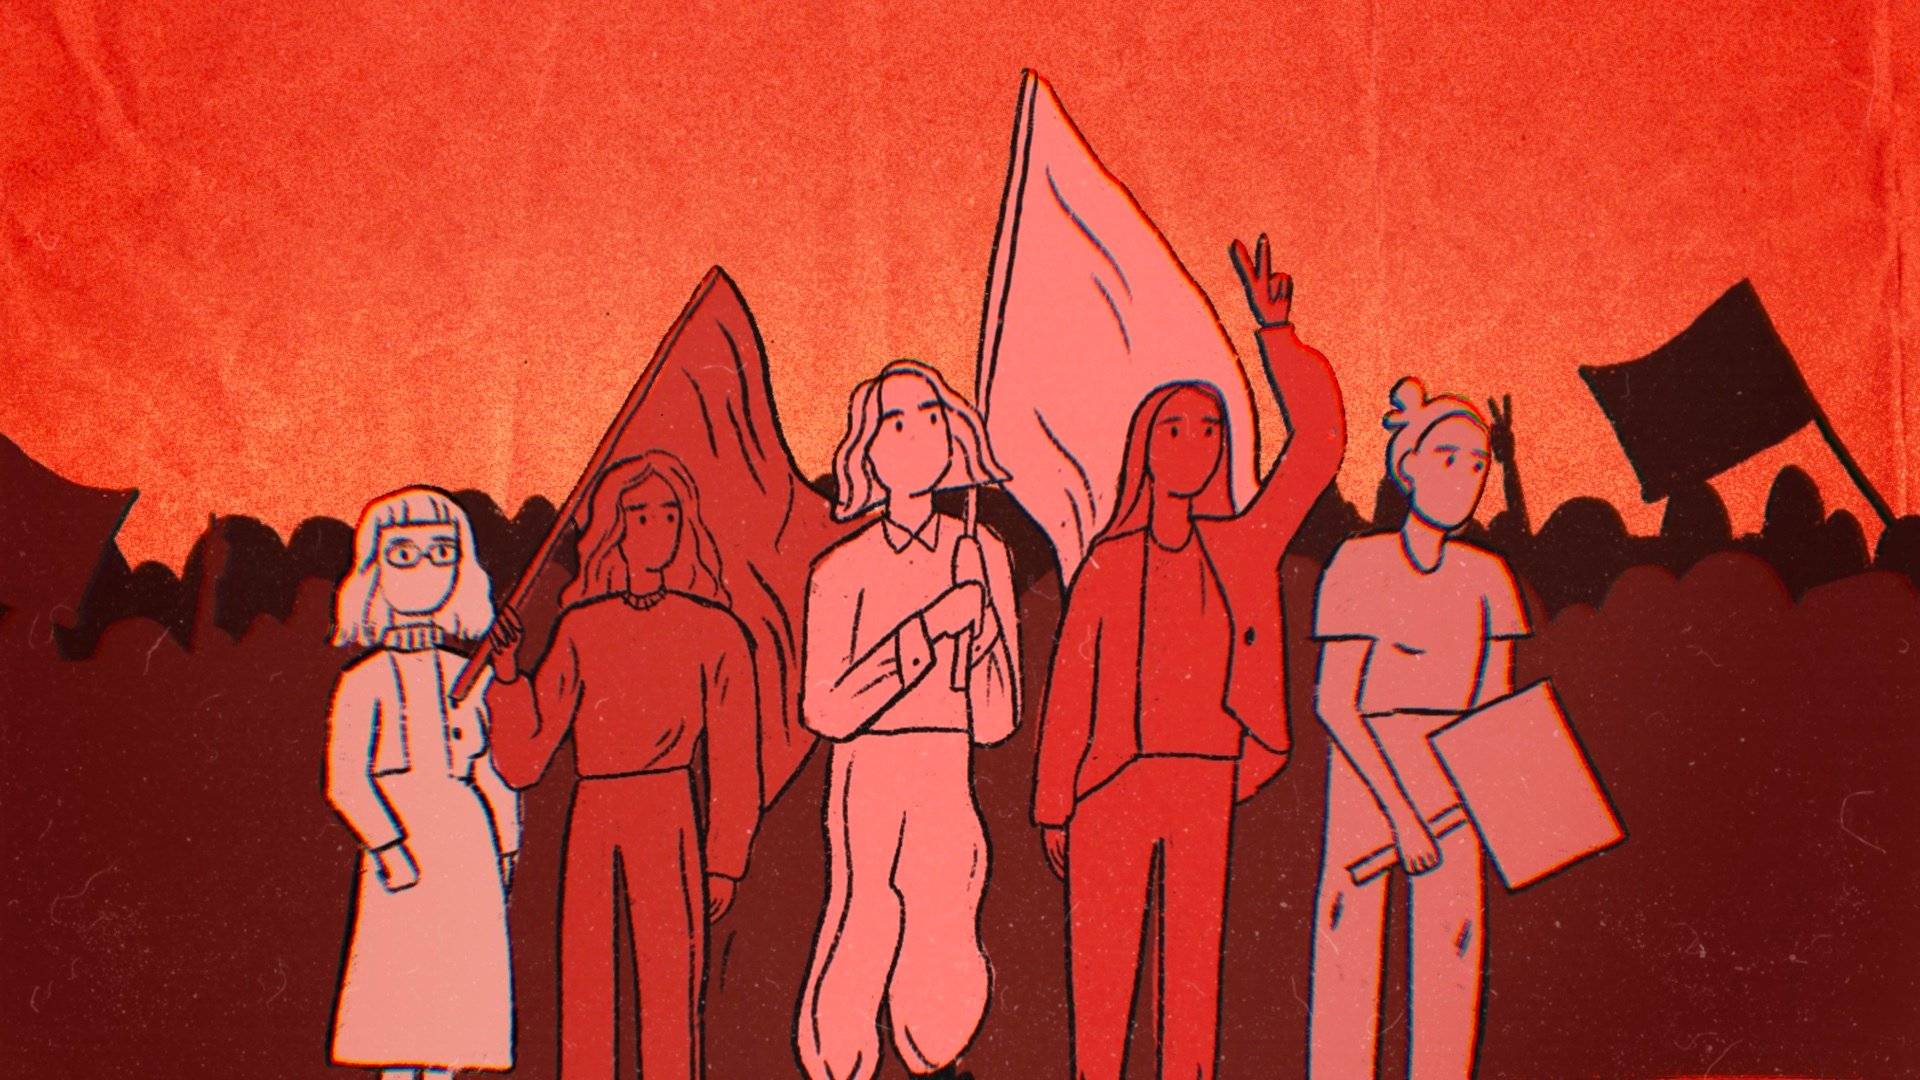 Grafiika w kolorze bordo przedstawiająca sylwetki kobiet z transparentami